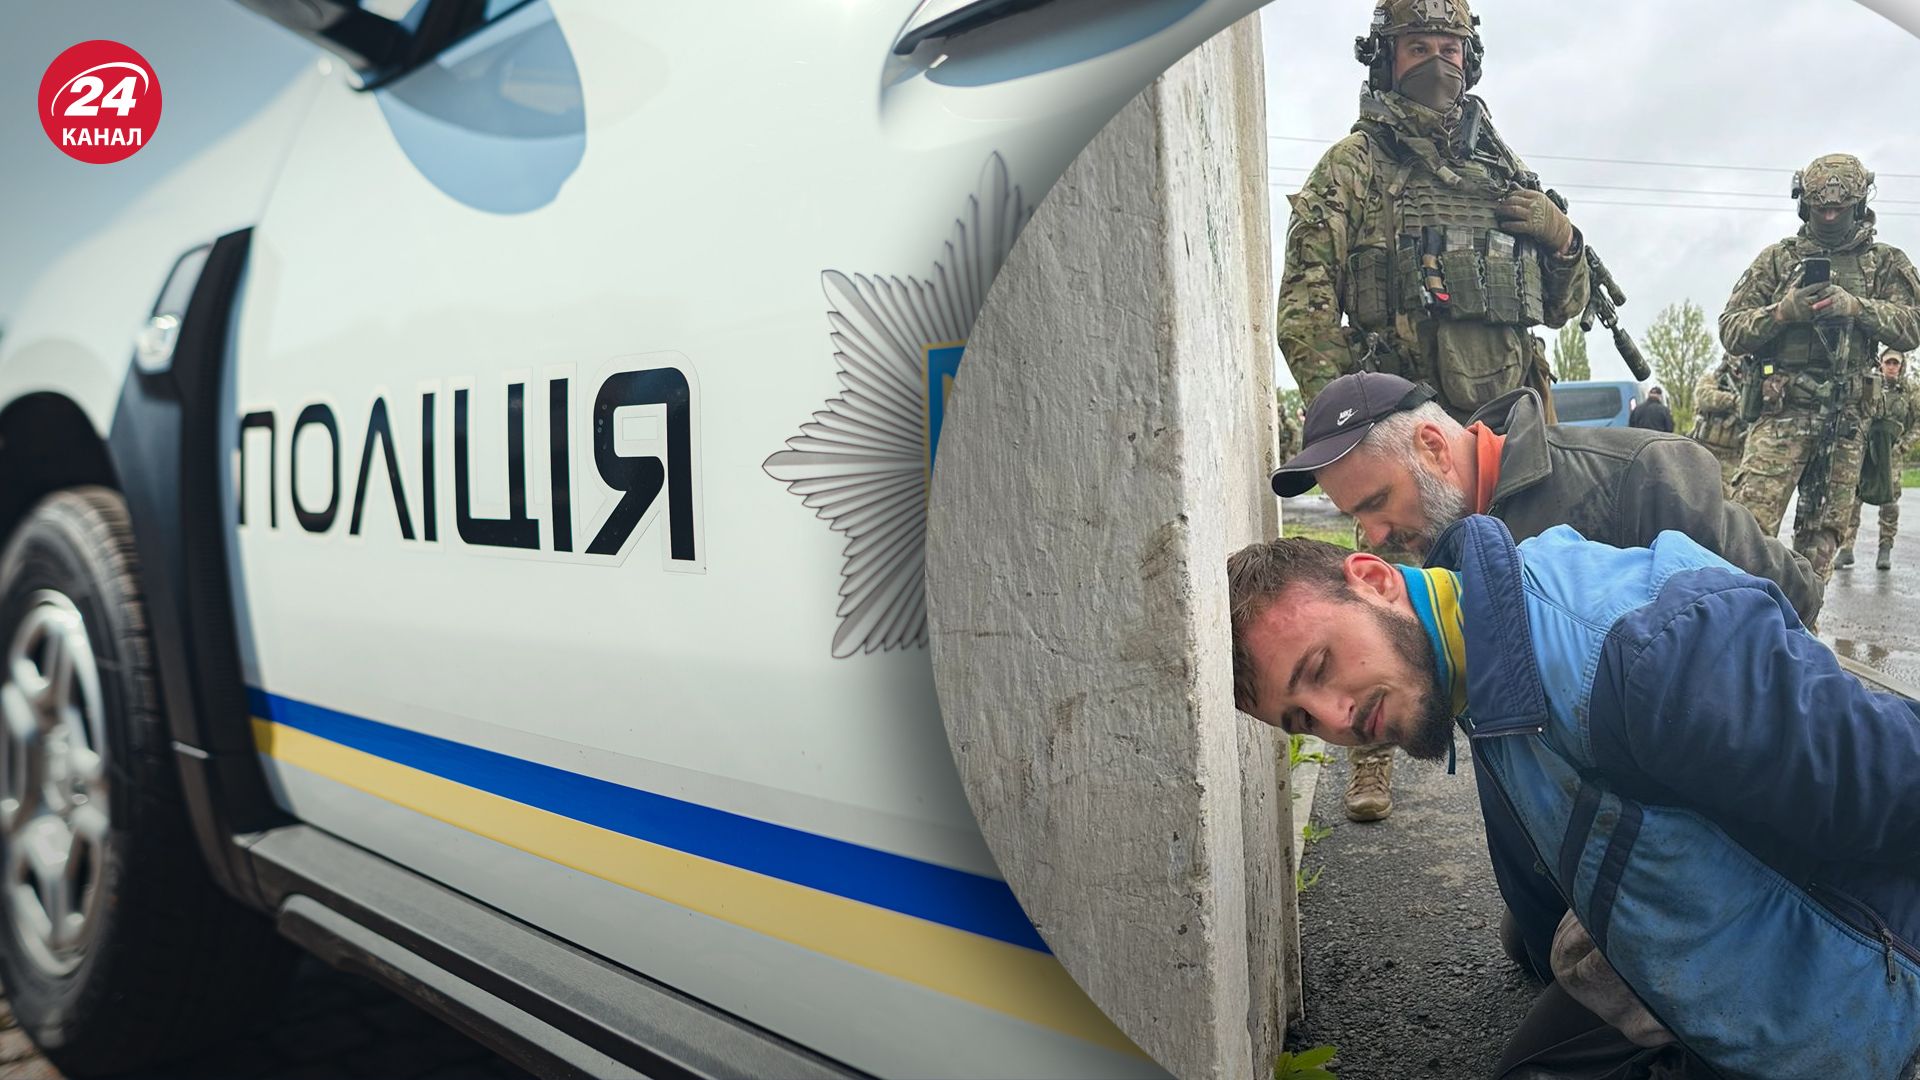 Нападників на поліцейських затримали в Одеській області